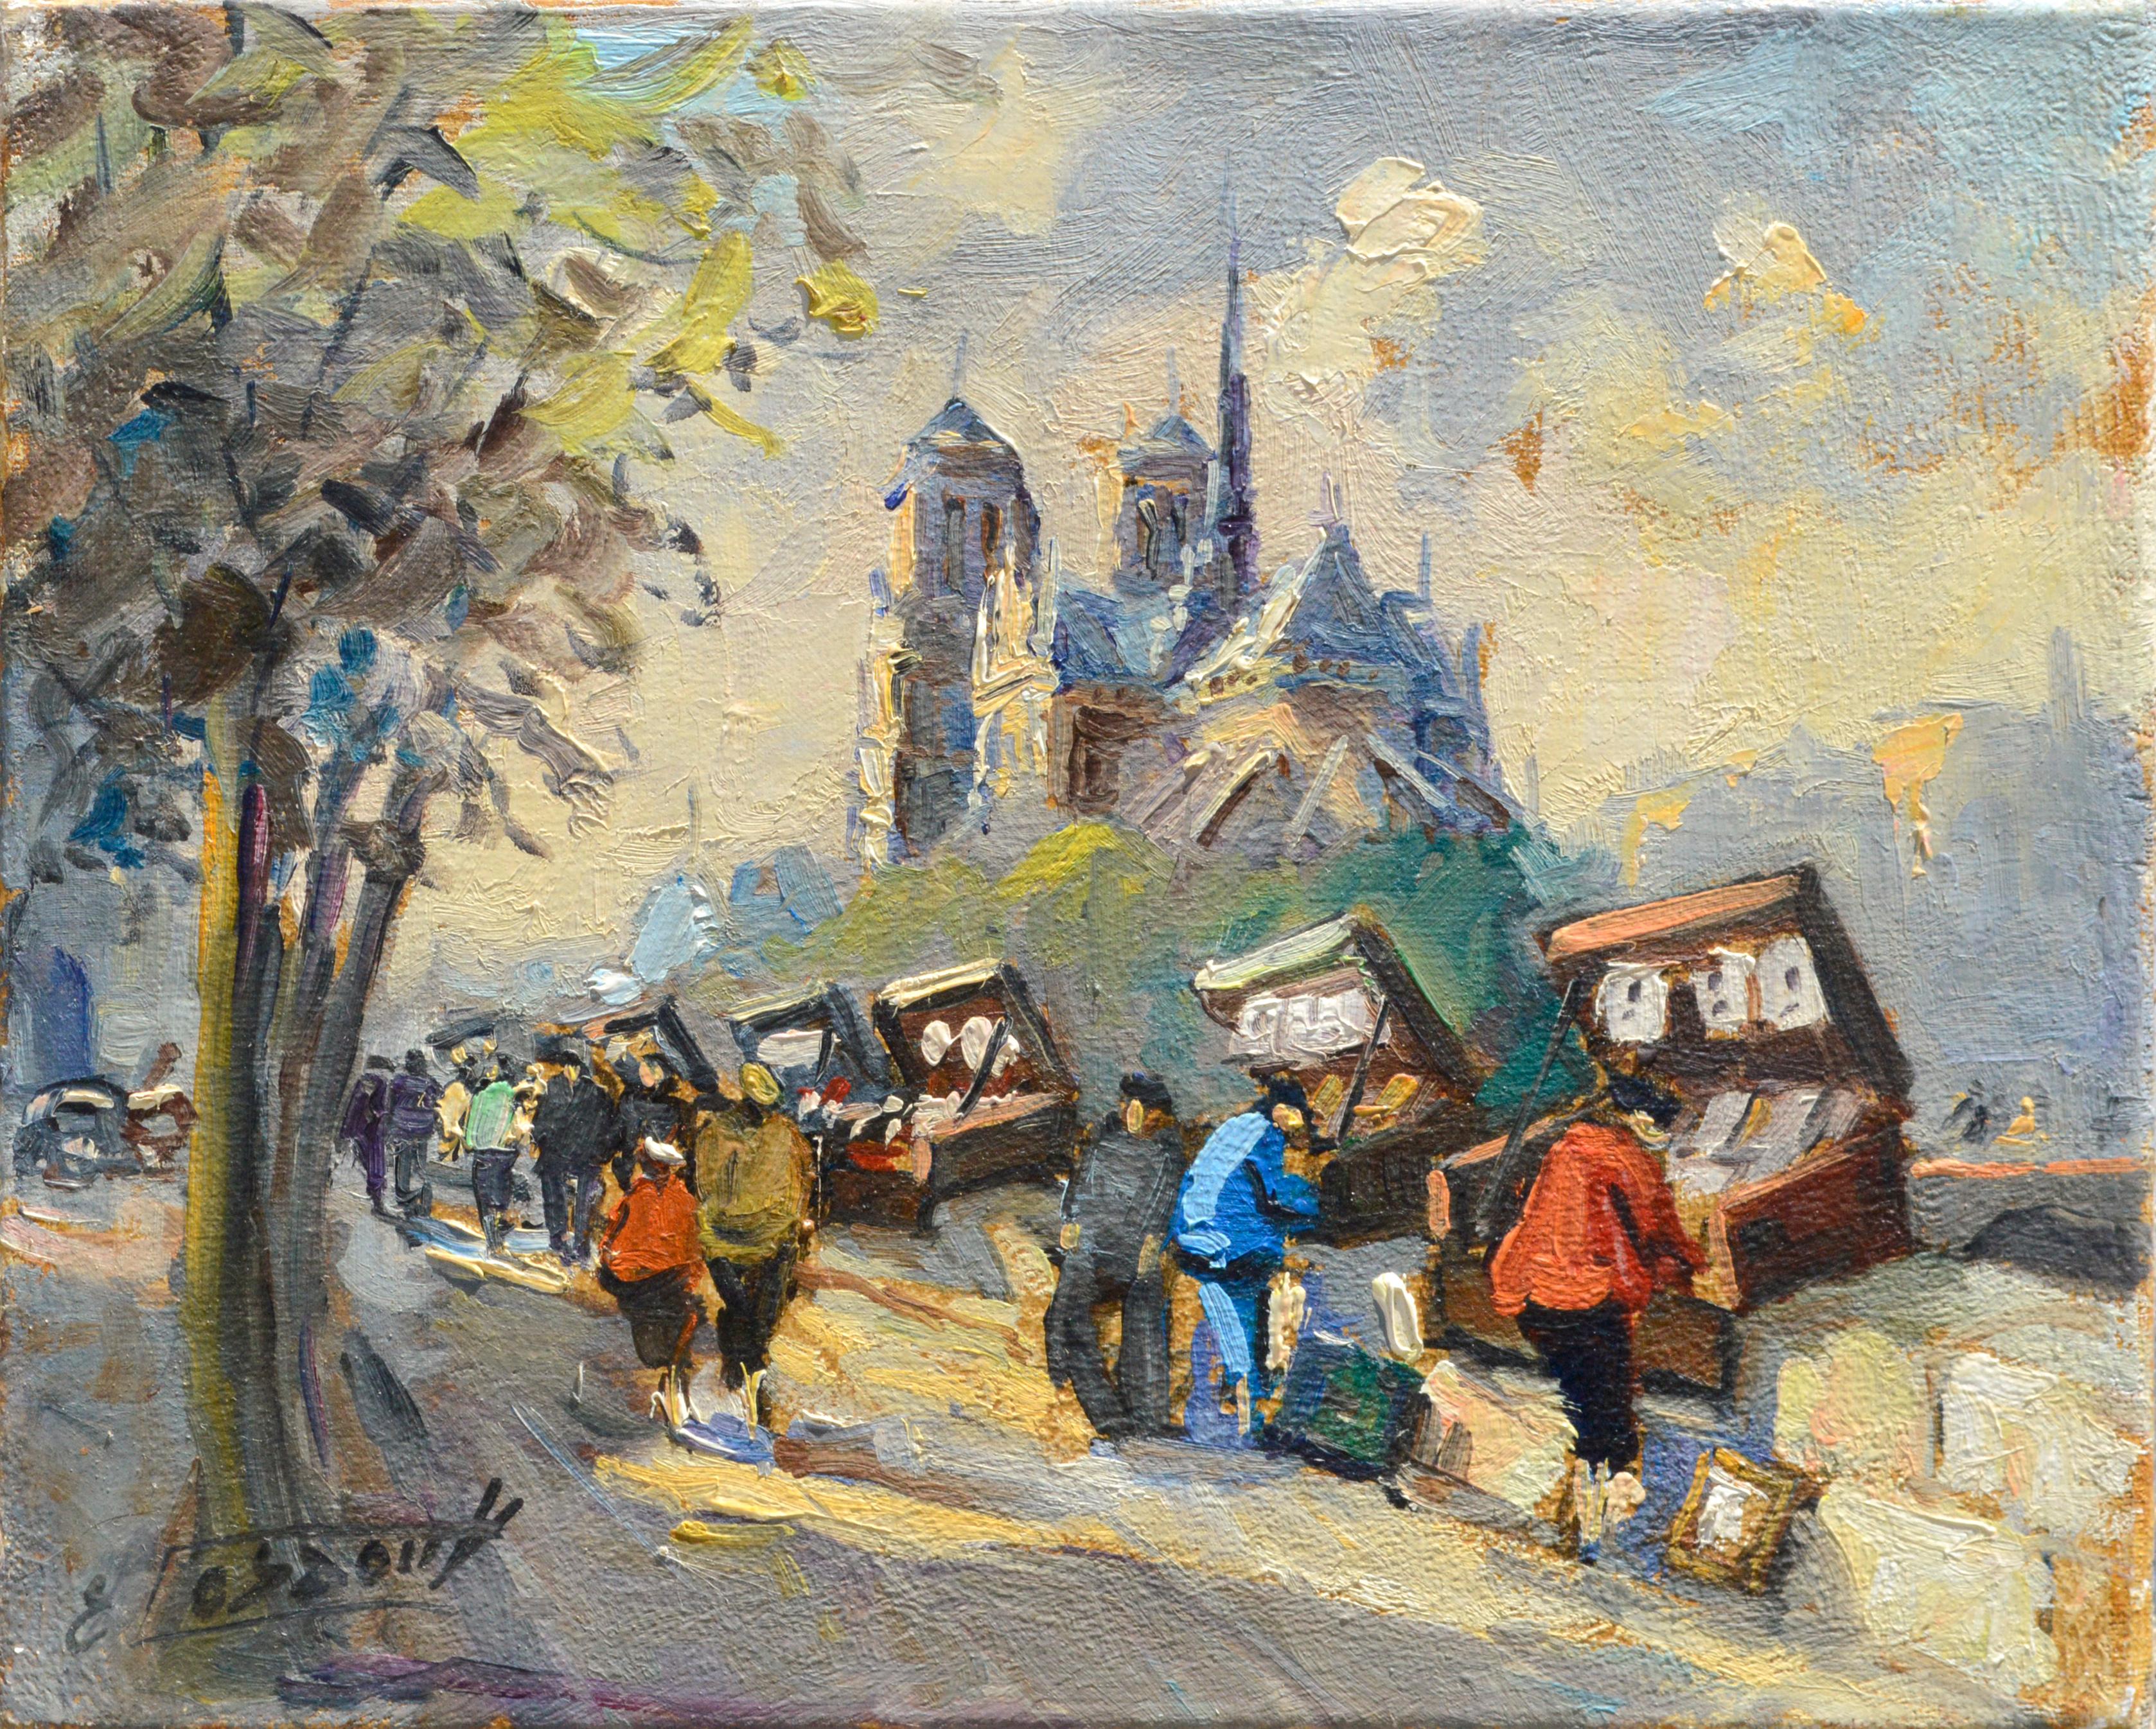 Paris Street Vendors - Genre Landscape - Painting by Unknown